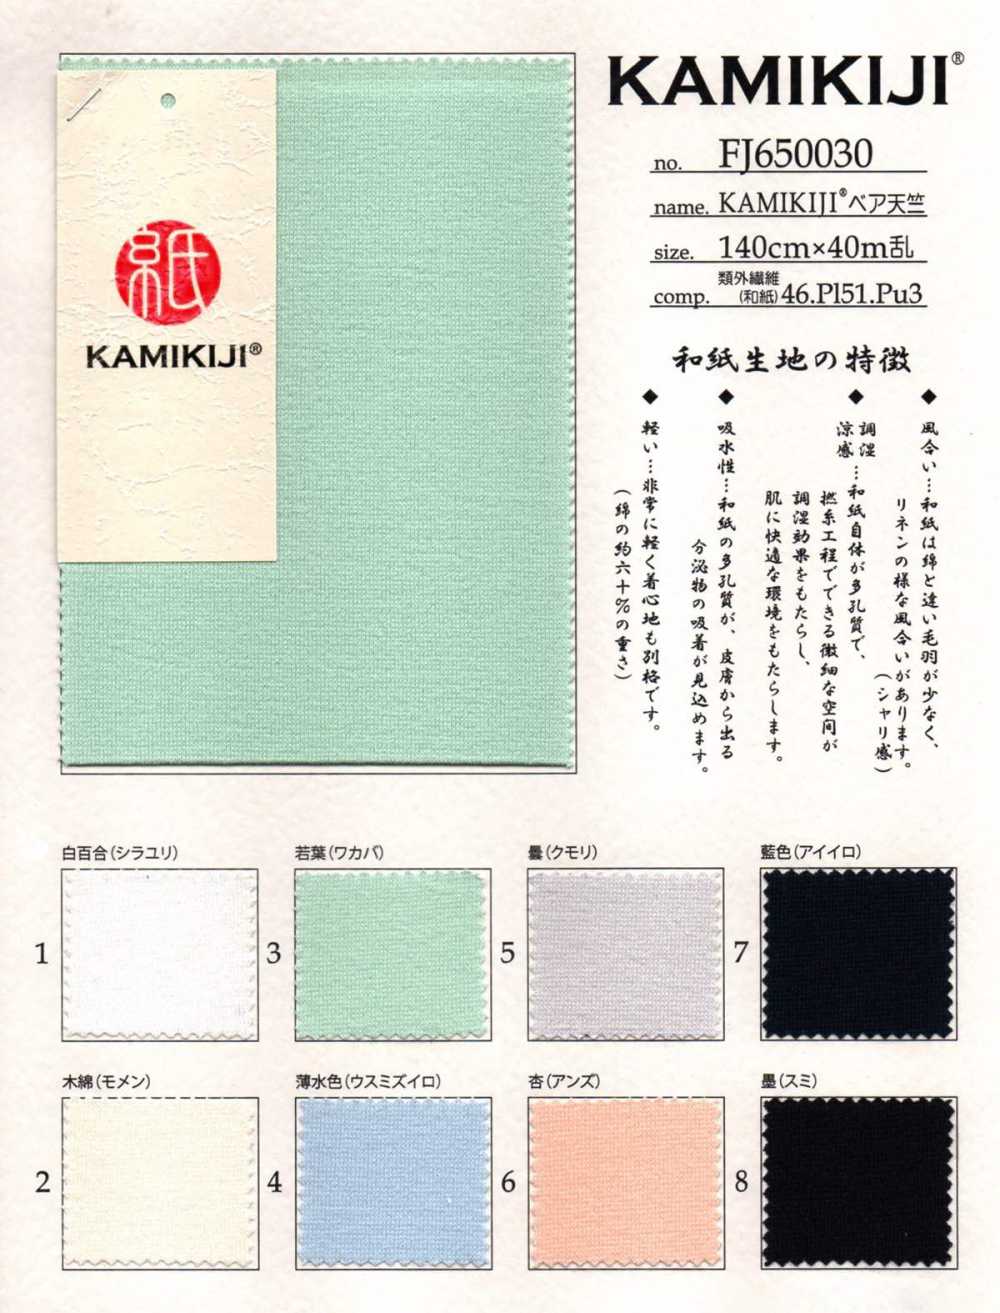 FJ650030 KAMIKIJI® Bare Jersey[Textile / Fabric] Fujisaki Textile